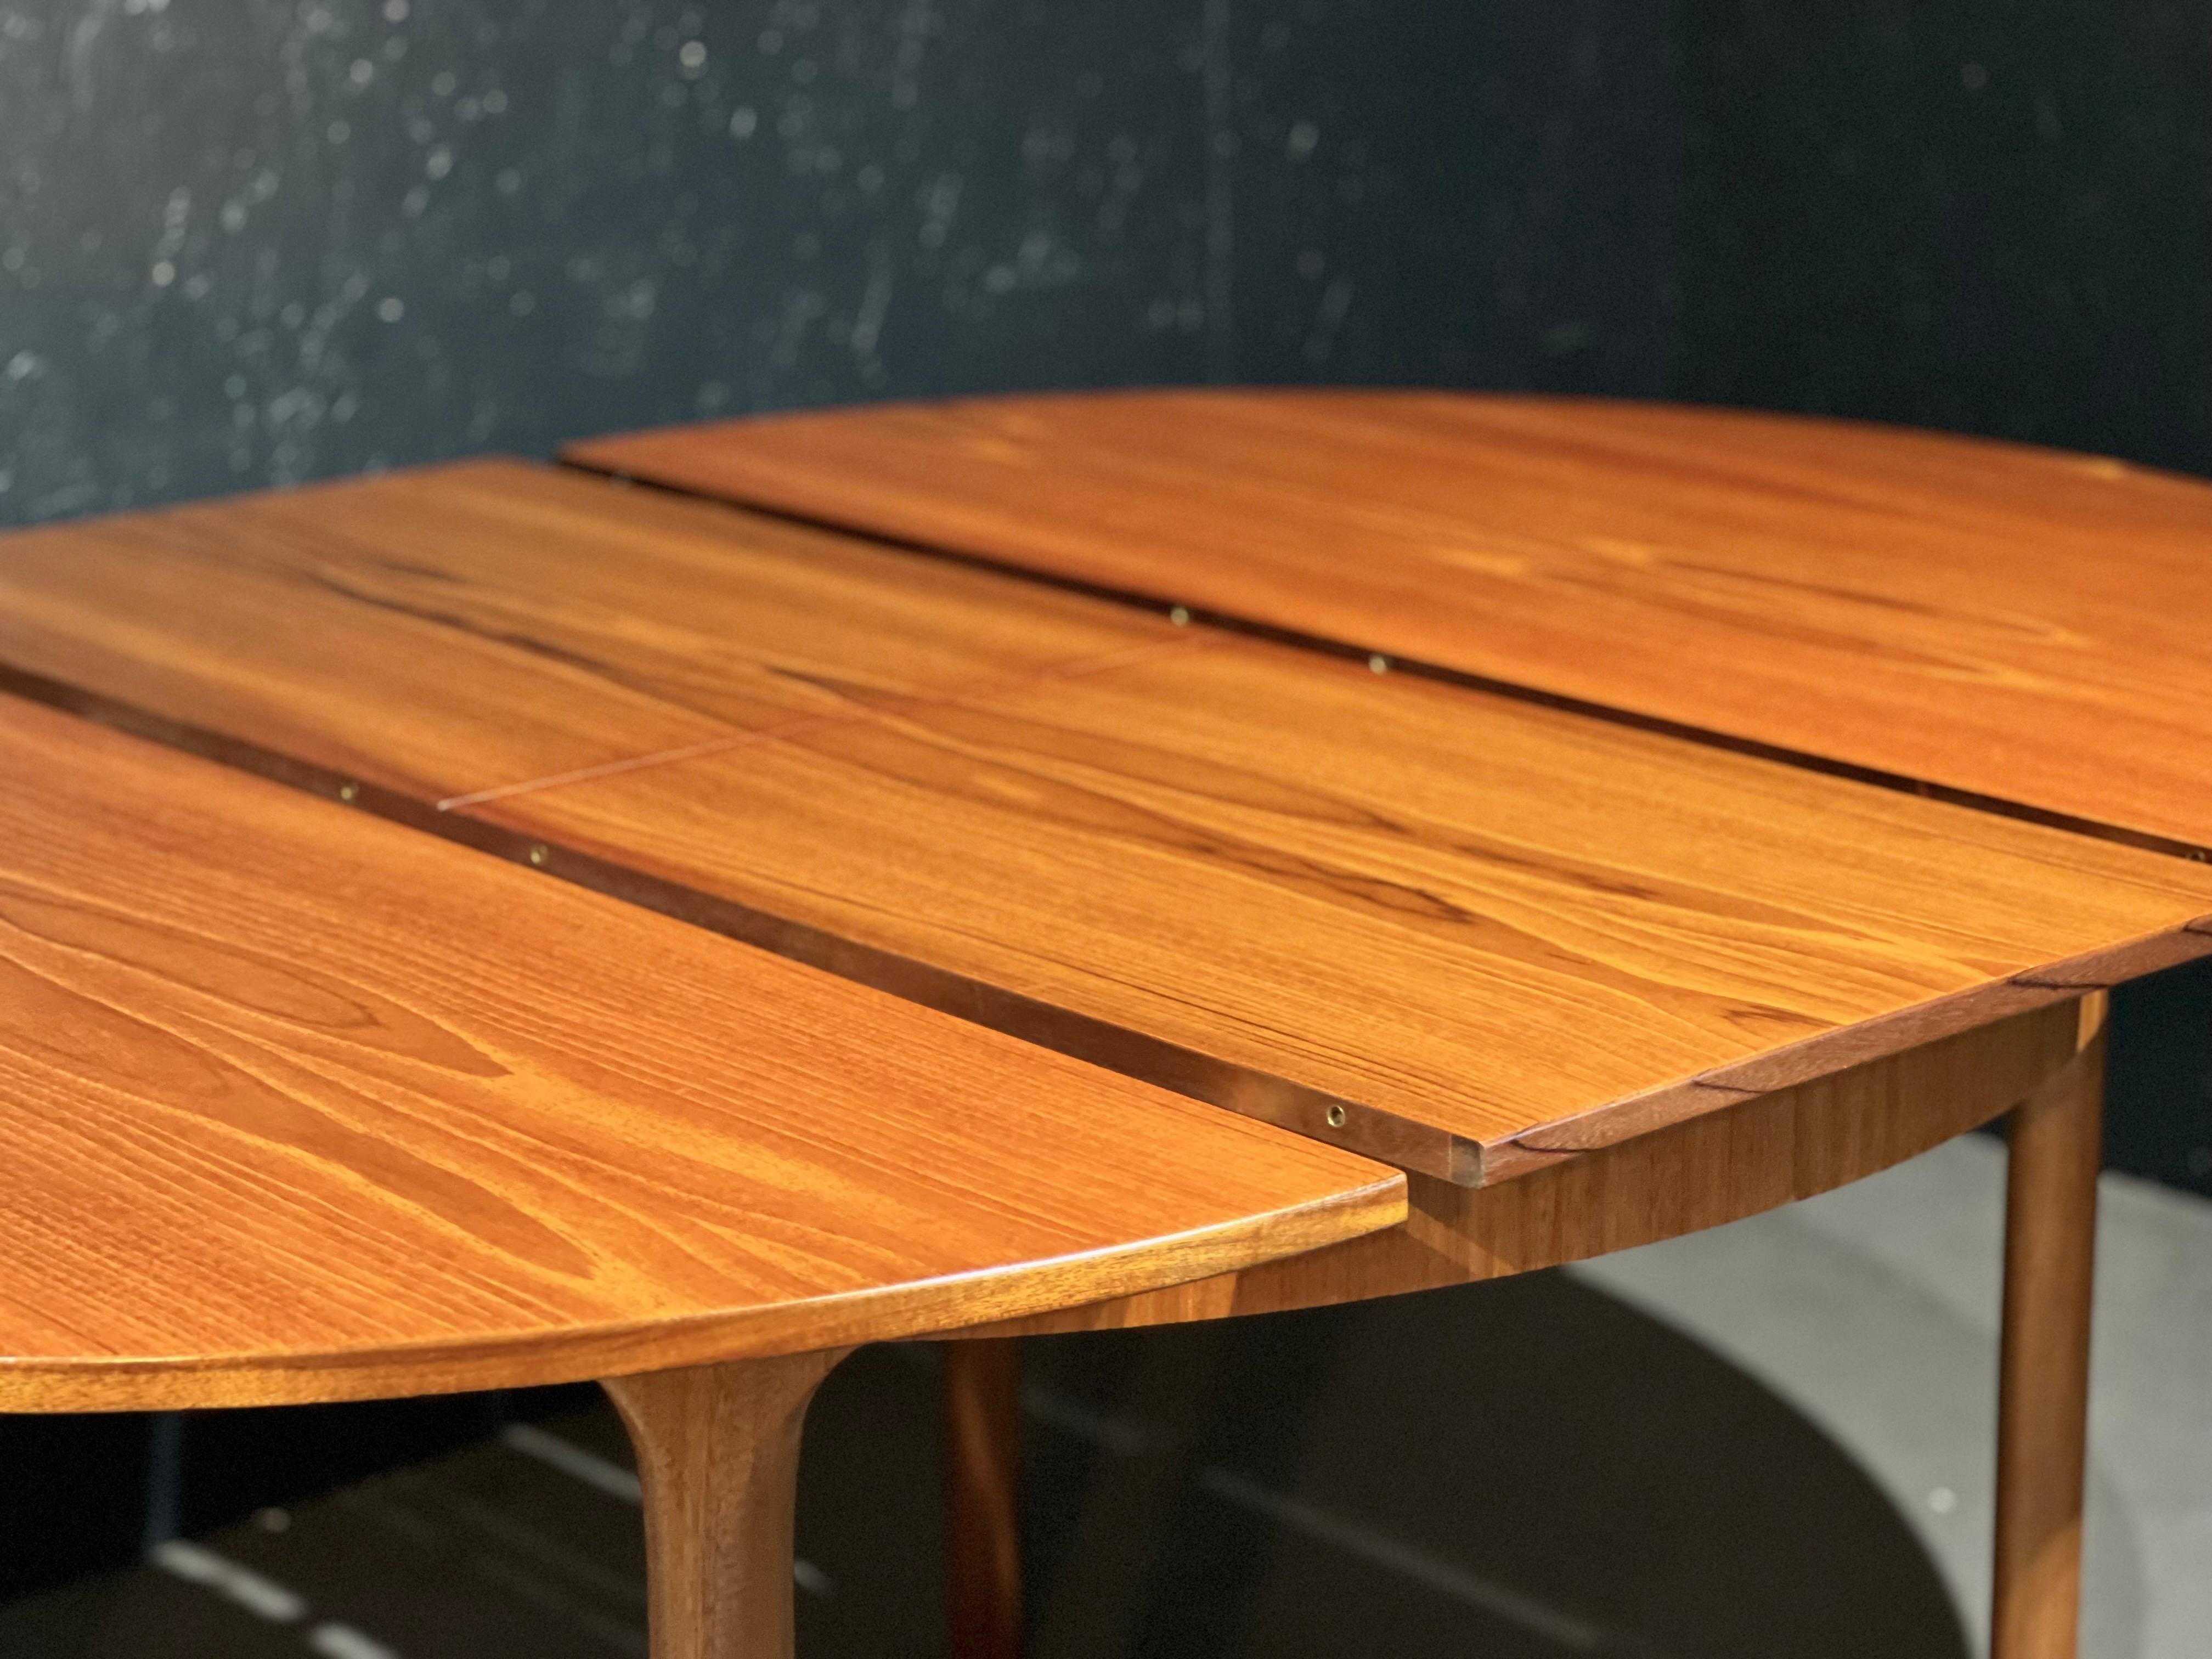 McIntosh Tisch und Stühle Set.

Das Set besteht aus den folgenden Elementen:

Ausziehbarer runder Tisch aus Teakholz, der zur Dunvegan-Kollektion gehört, die Tom Robertson in den 1960er Jahren in Schottland entworfen hat.
Der Tisch hat eine